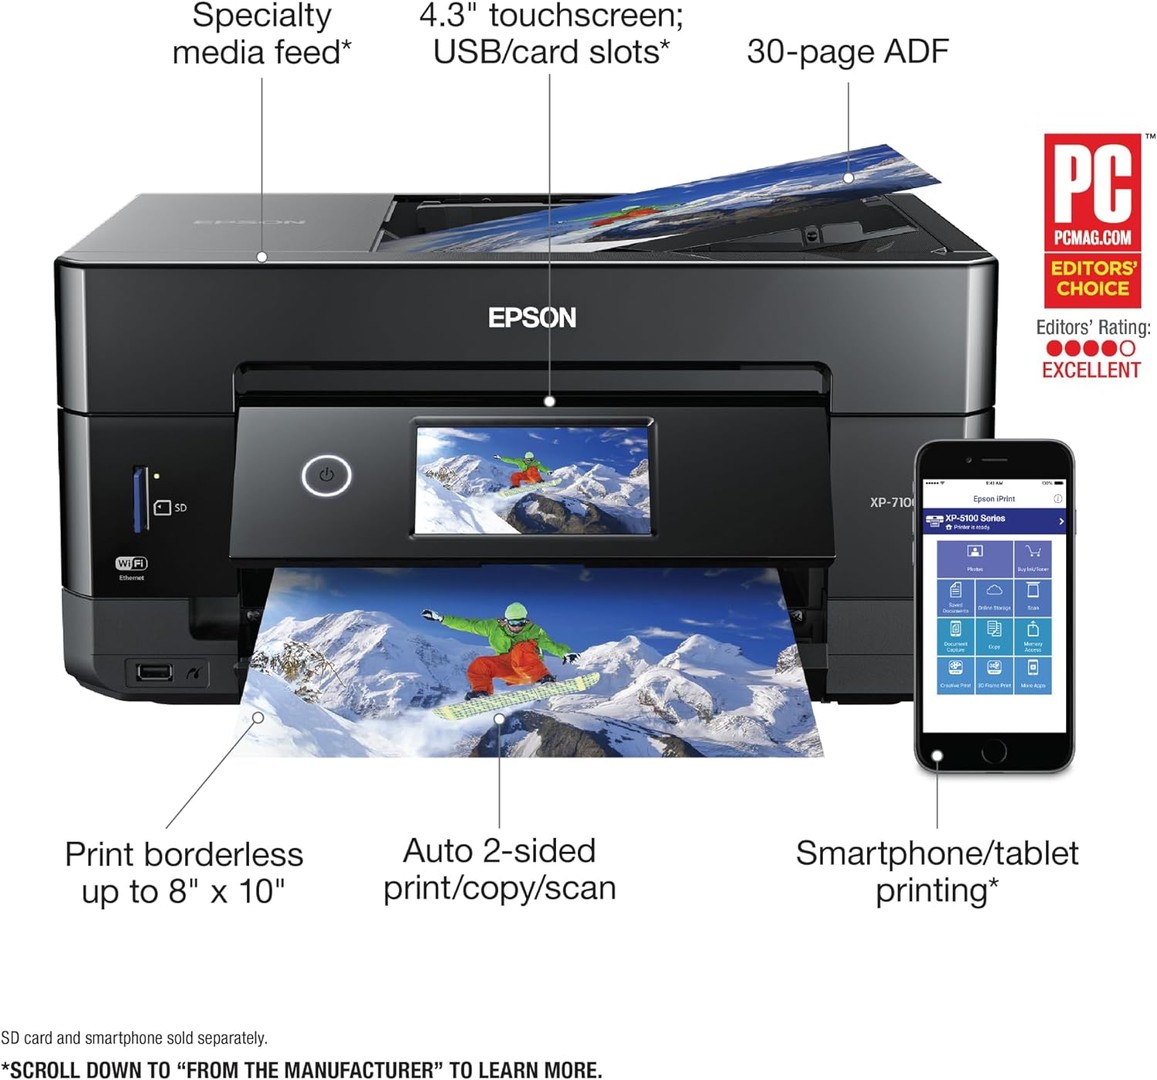 impresoras y scanners - Impresora Epson XP-7100 Expression de fotografía a color Premium Wireeles, usb 2